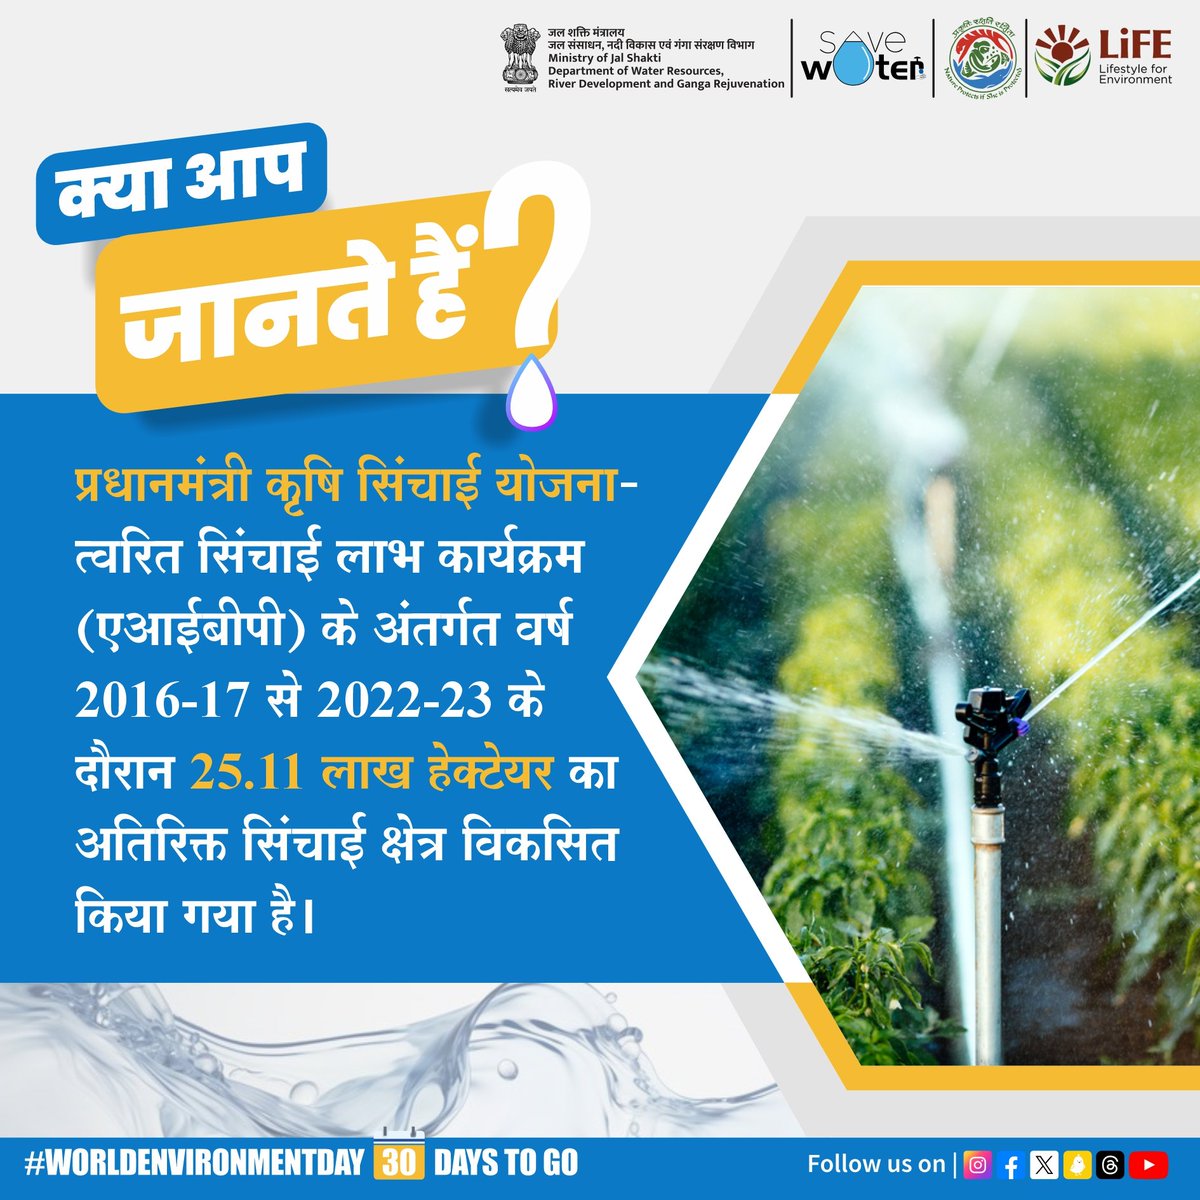 प्रधानमंत्री कृषि सिंचाई योजना के अंतर्गत किसान सूक्ष्म सिंचाई के माध्यम से जल संसाधनों का सयंमित उपयोग करके अधिक क्षेत्र में सिंचाई कर सकते हैं, जिससे पैदावार में वृद्धि और कृषि उत्पादों की गुणवत्ता में सुधार आता है। #DidYouKnow #missionlife #DYK #PMKSY